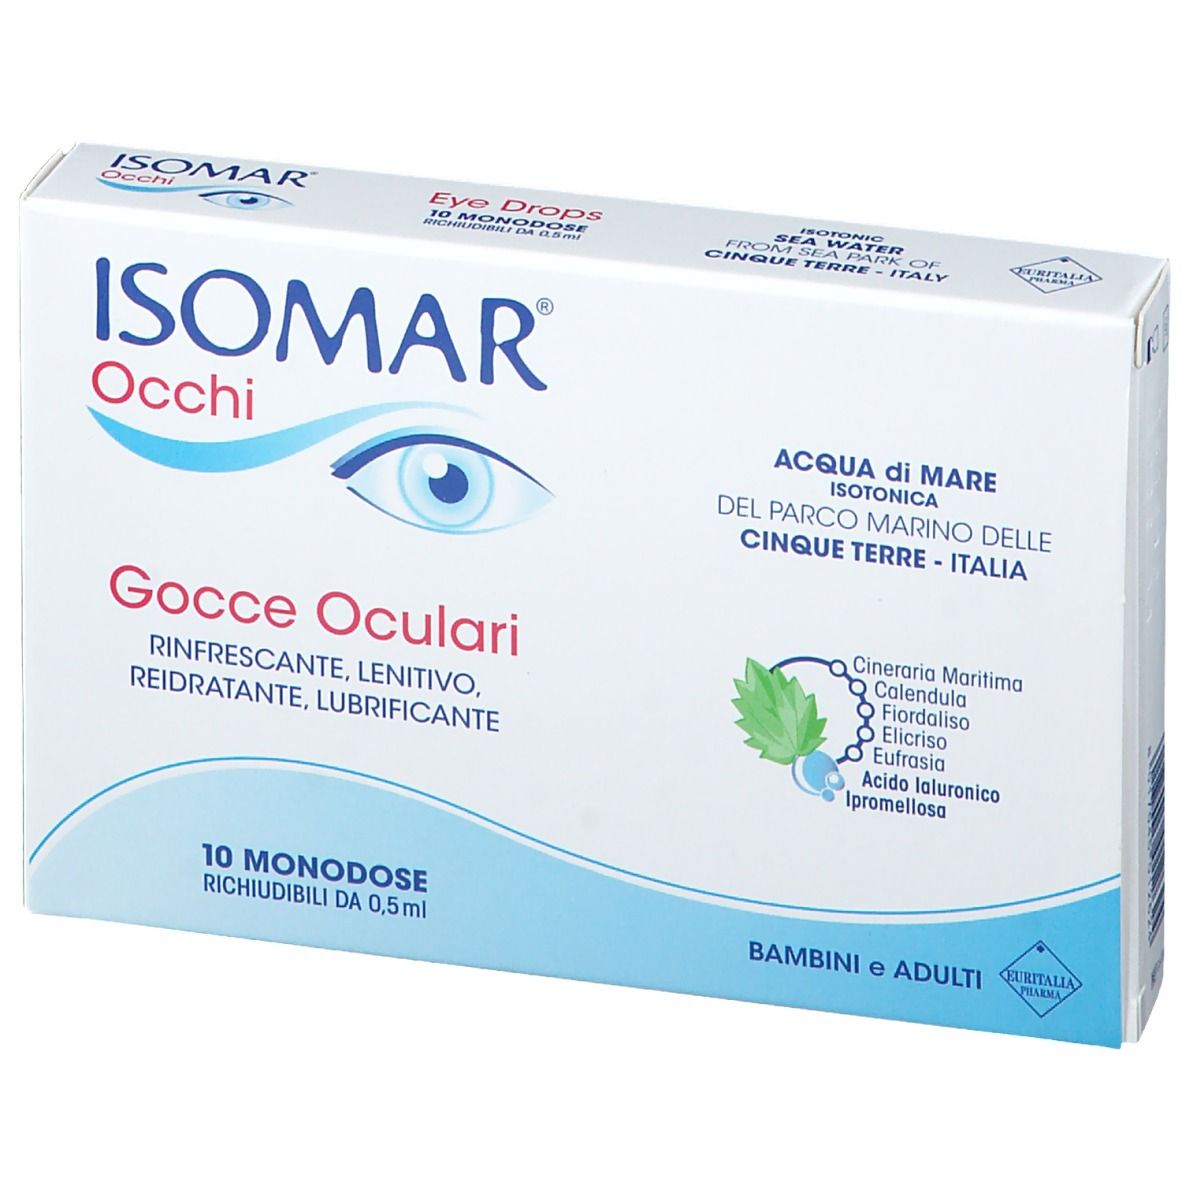 Isomar® Occhi Gocce Oculari